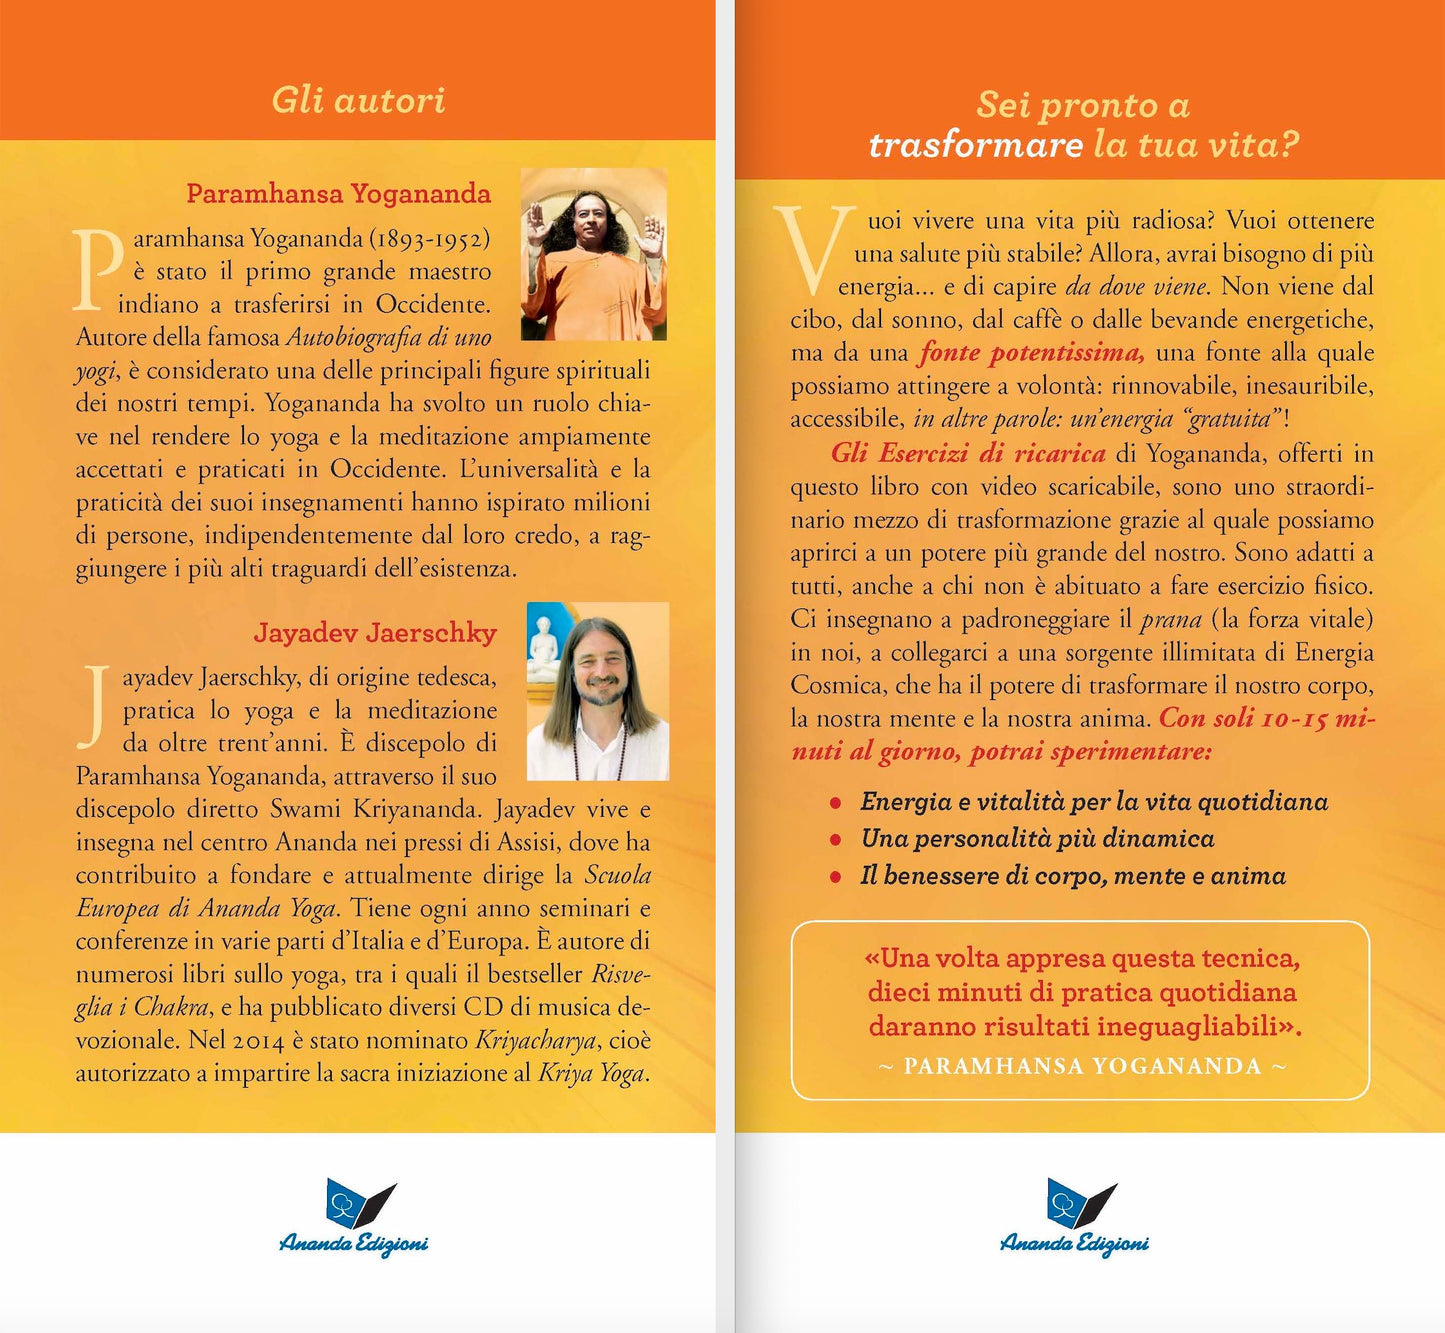 Gli Esercizi di ricarica di Paramhansa Yogananda Nuova Edizione::Come trasformare corpo, mente e anima con l'energia vitale